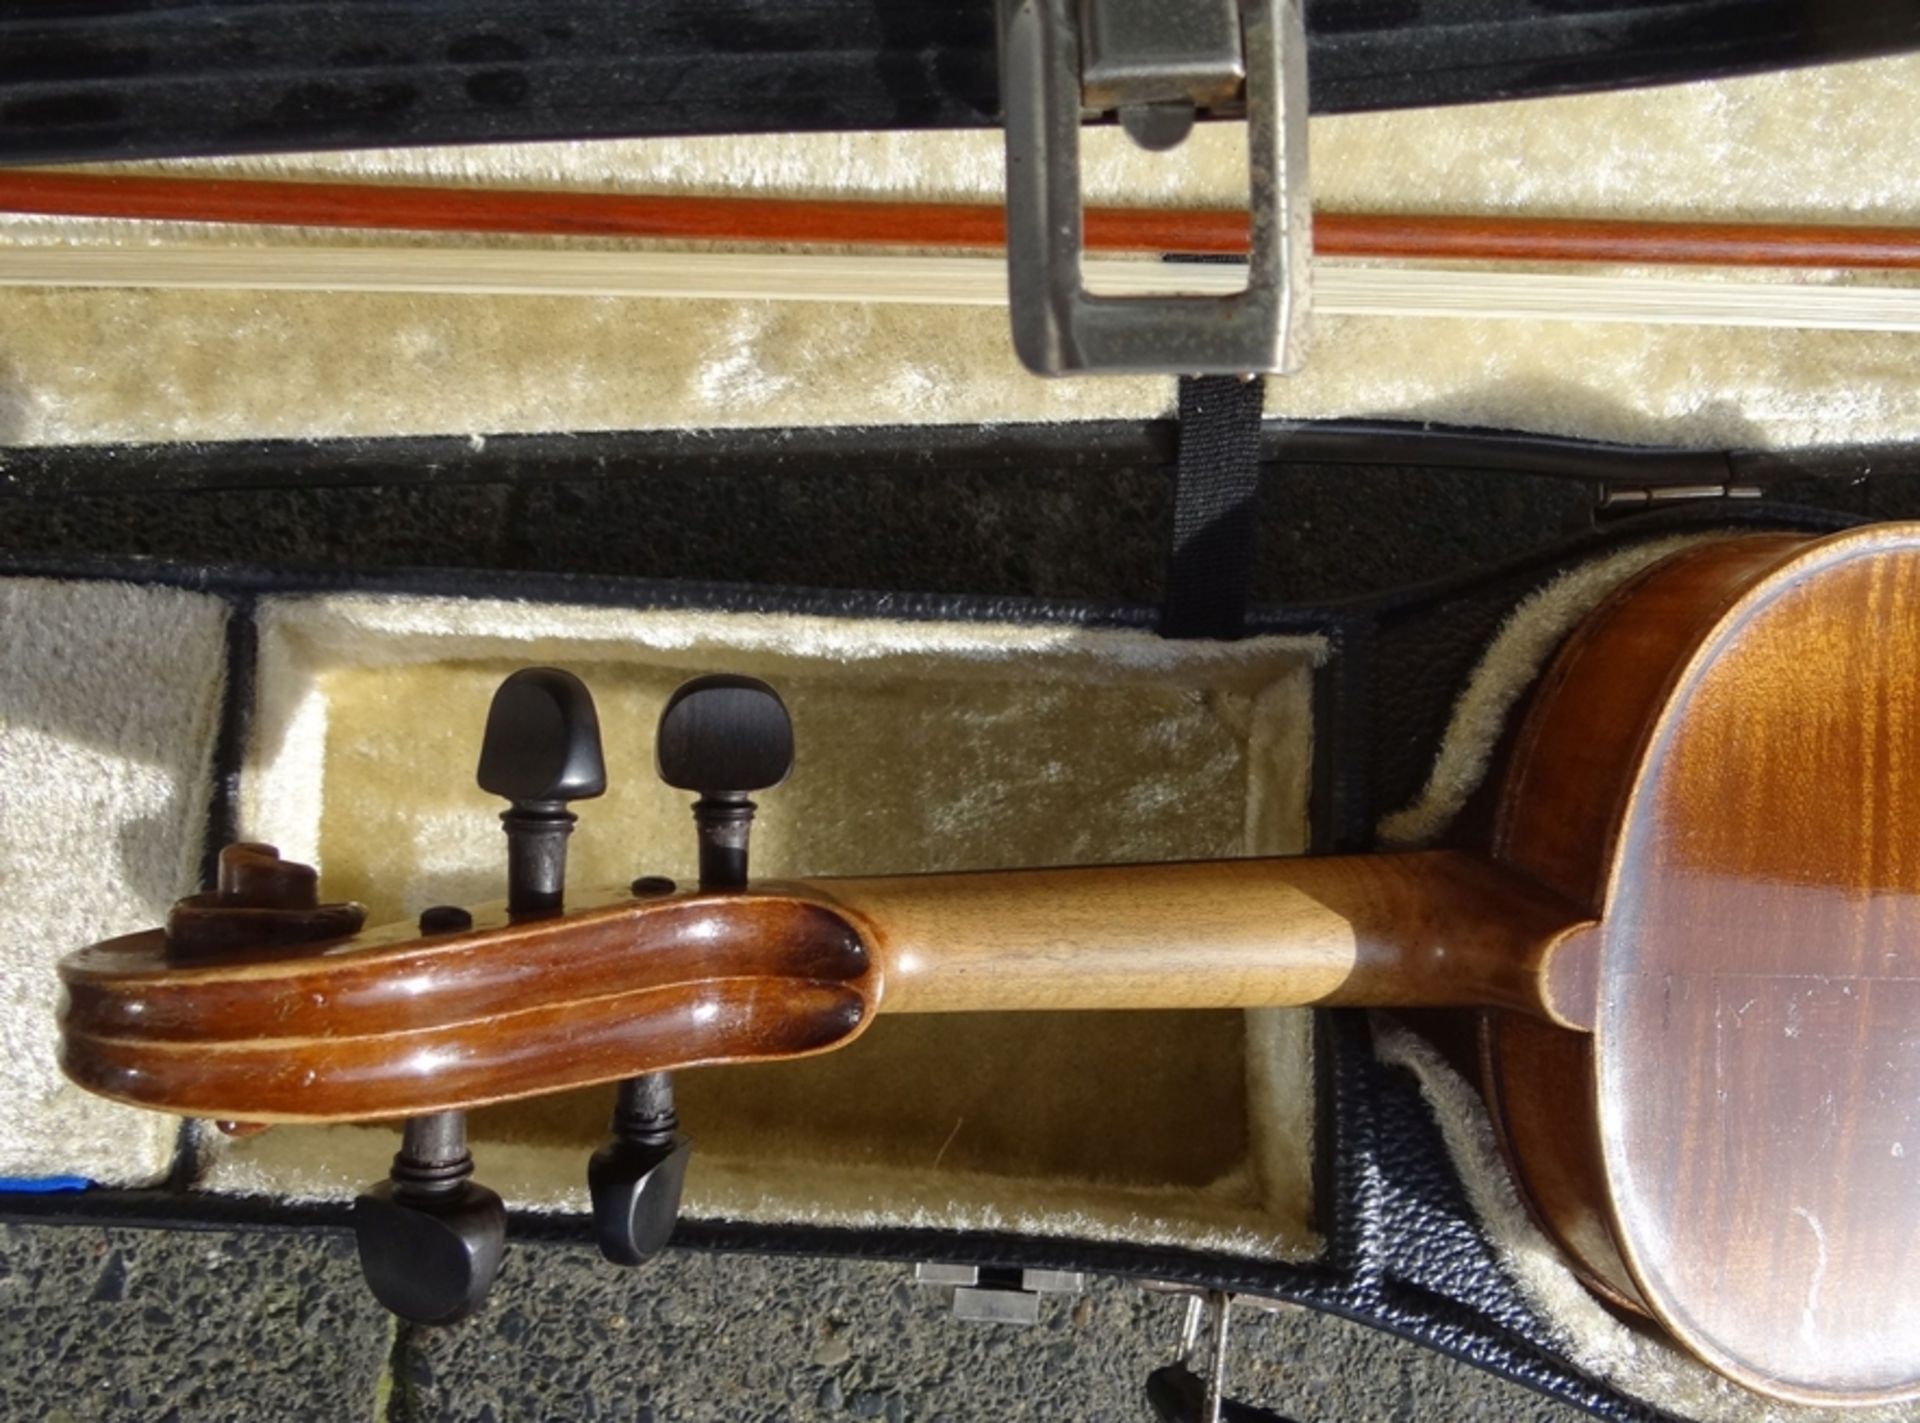 alte Geige in Koffer, guter Zustand, mit Bogen, Geige L-60 cm, - Bild 6 aus 7